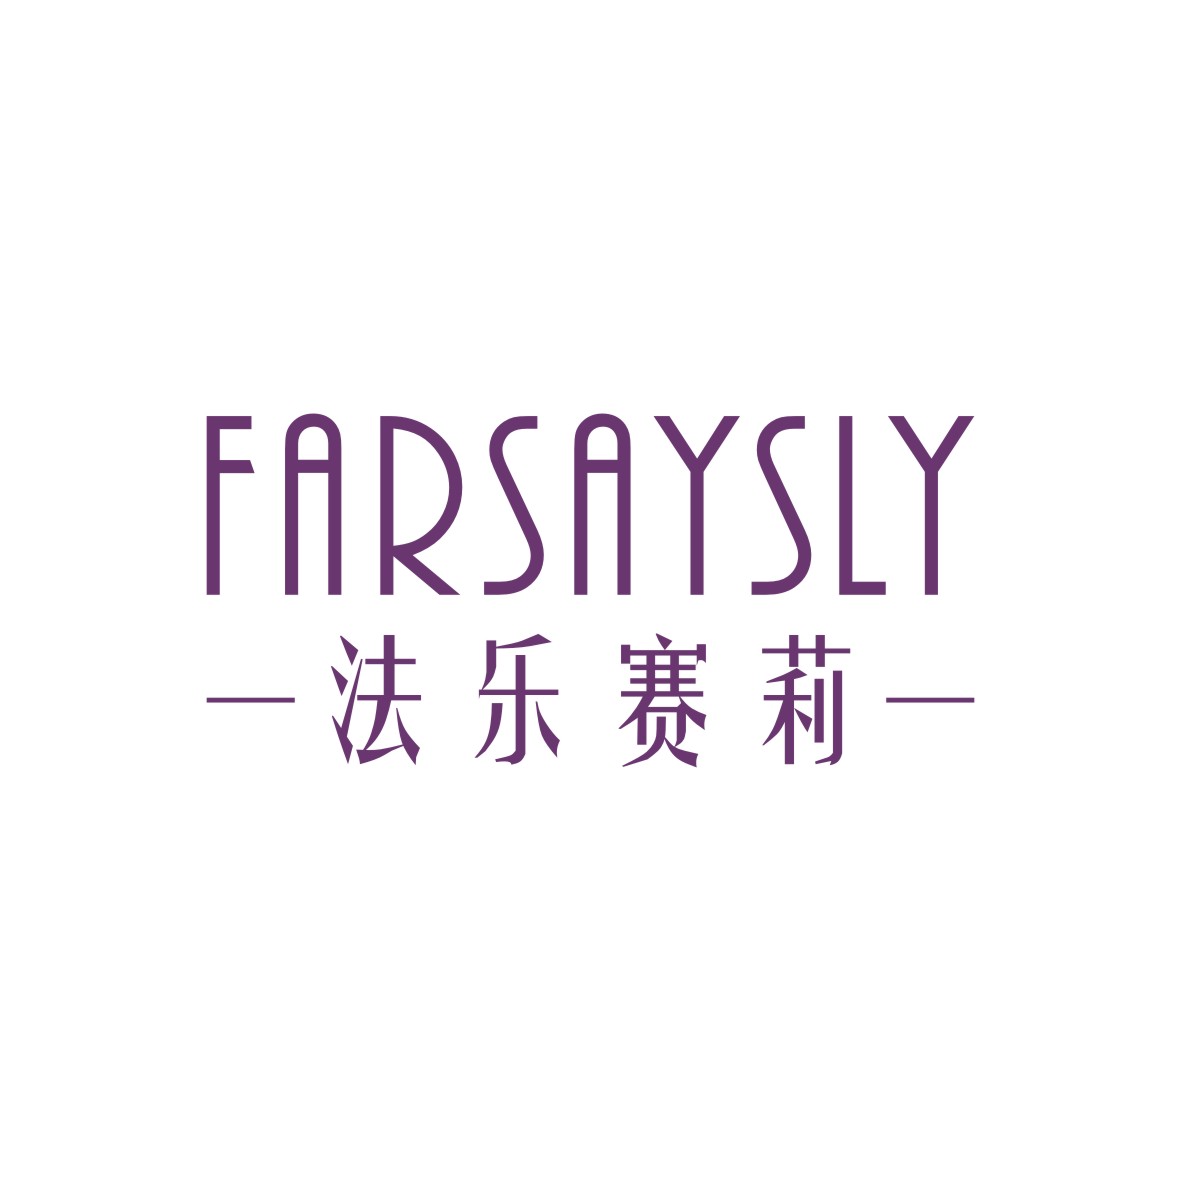 胡江礼商标法乐赛莉 FARSAYSLY（03类）商标转让流程及费用